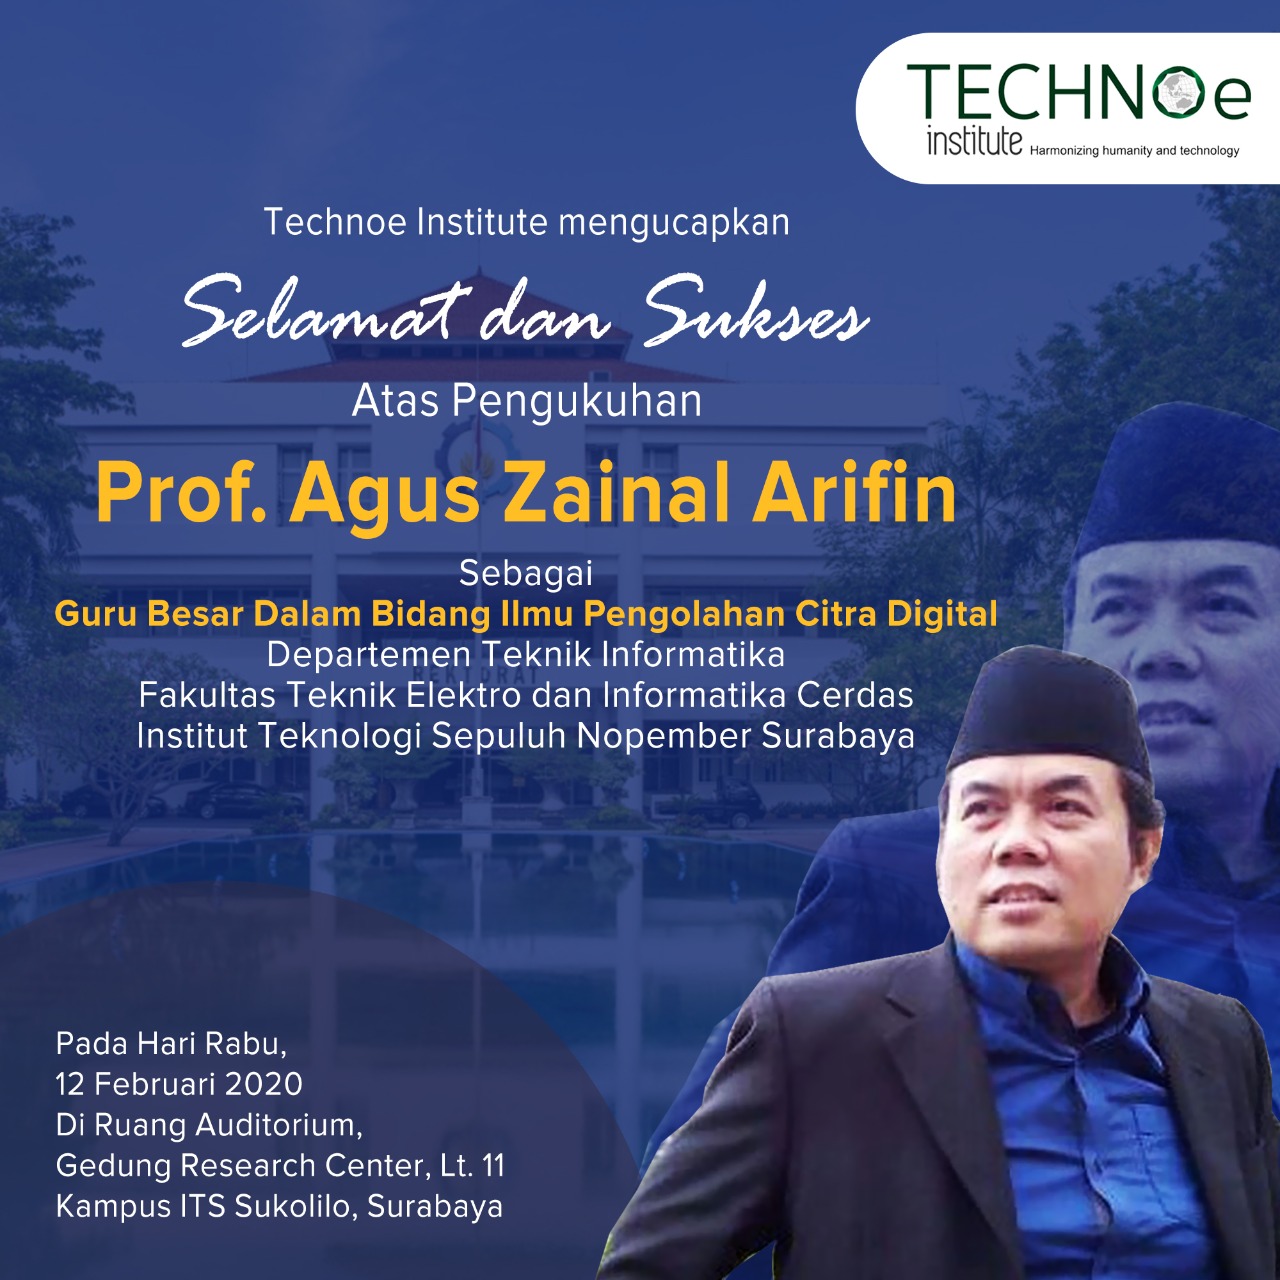 Prof.Agus Zainal Arifin